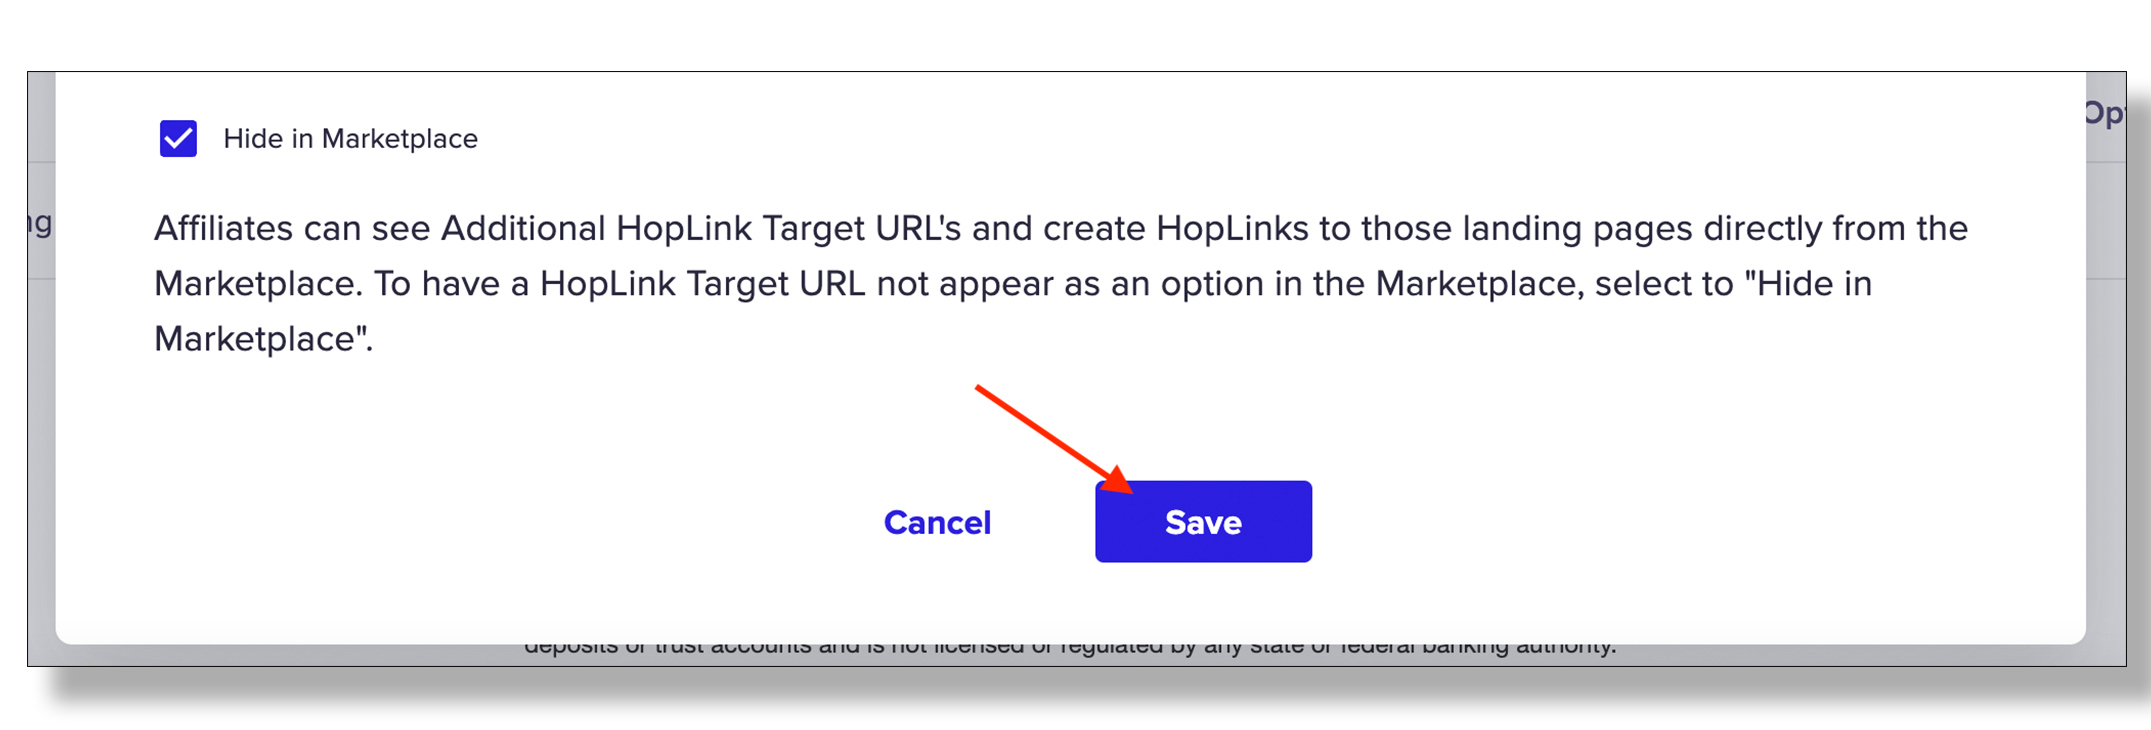 hoplink-target-6_copy.jpg